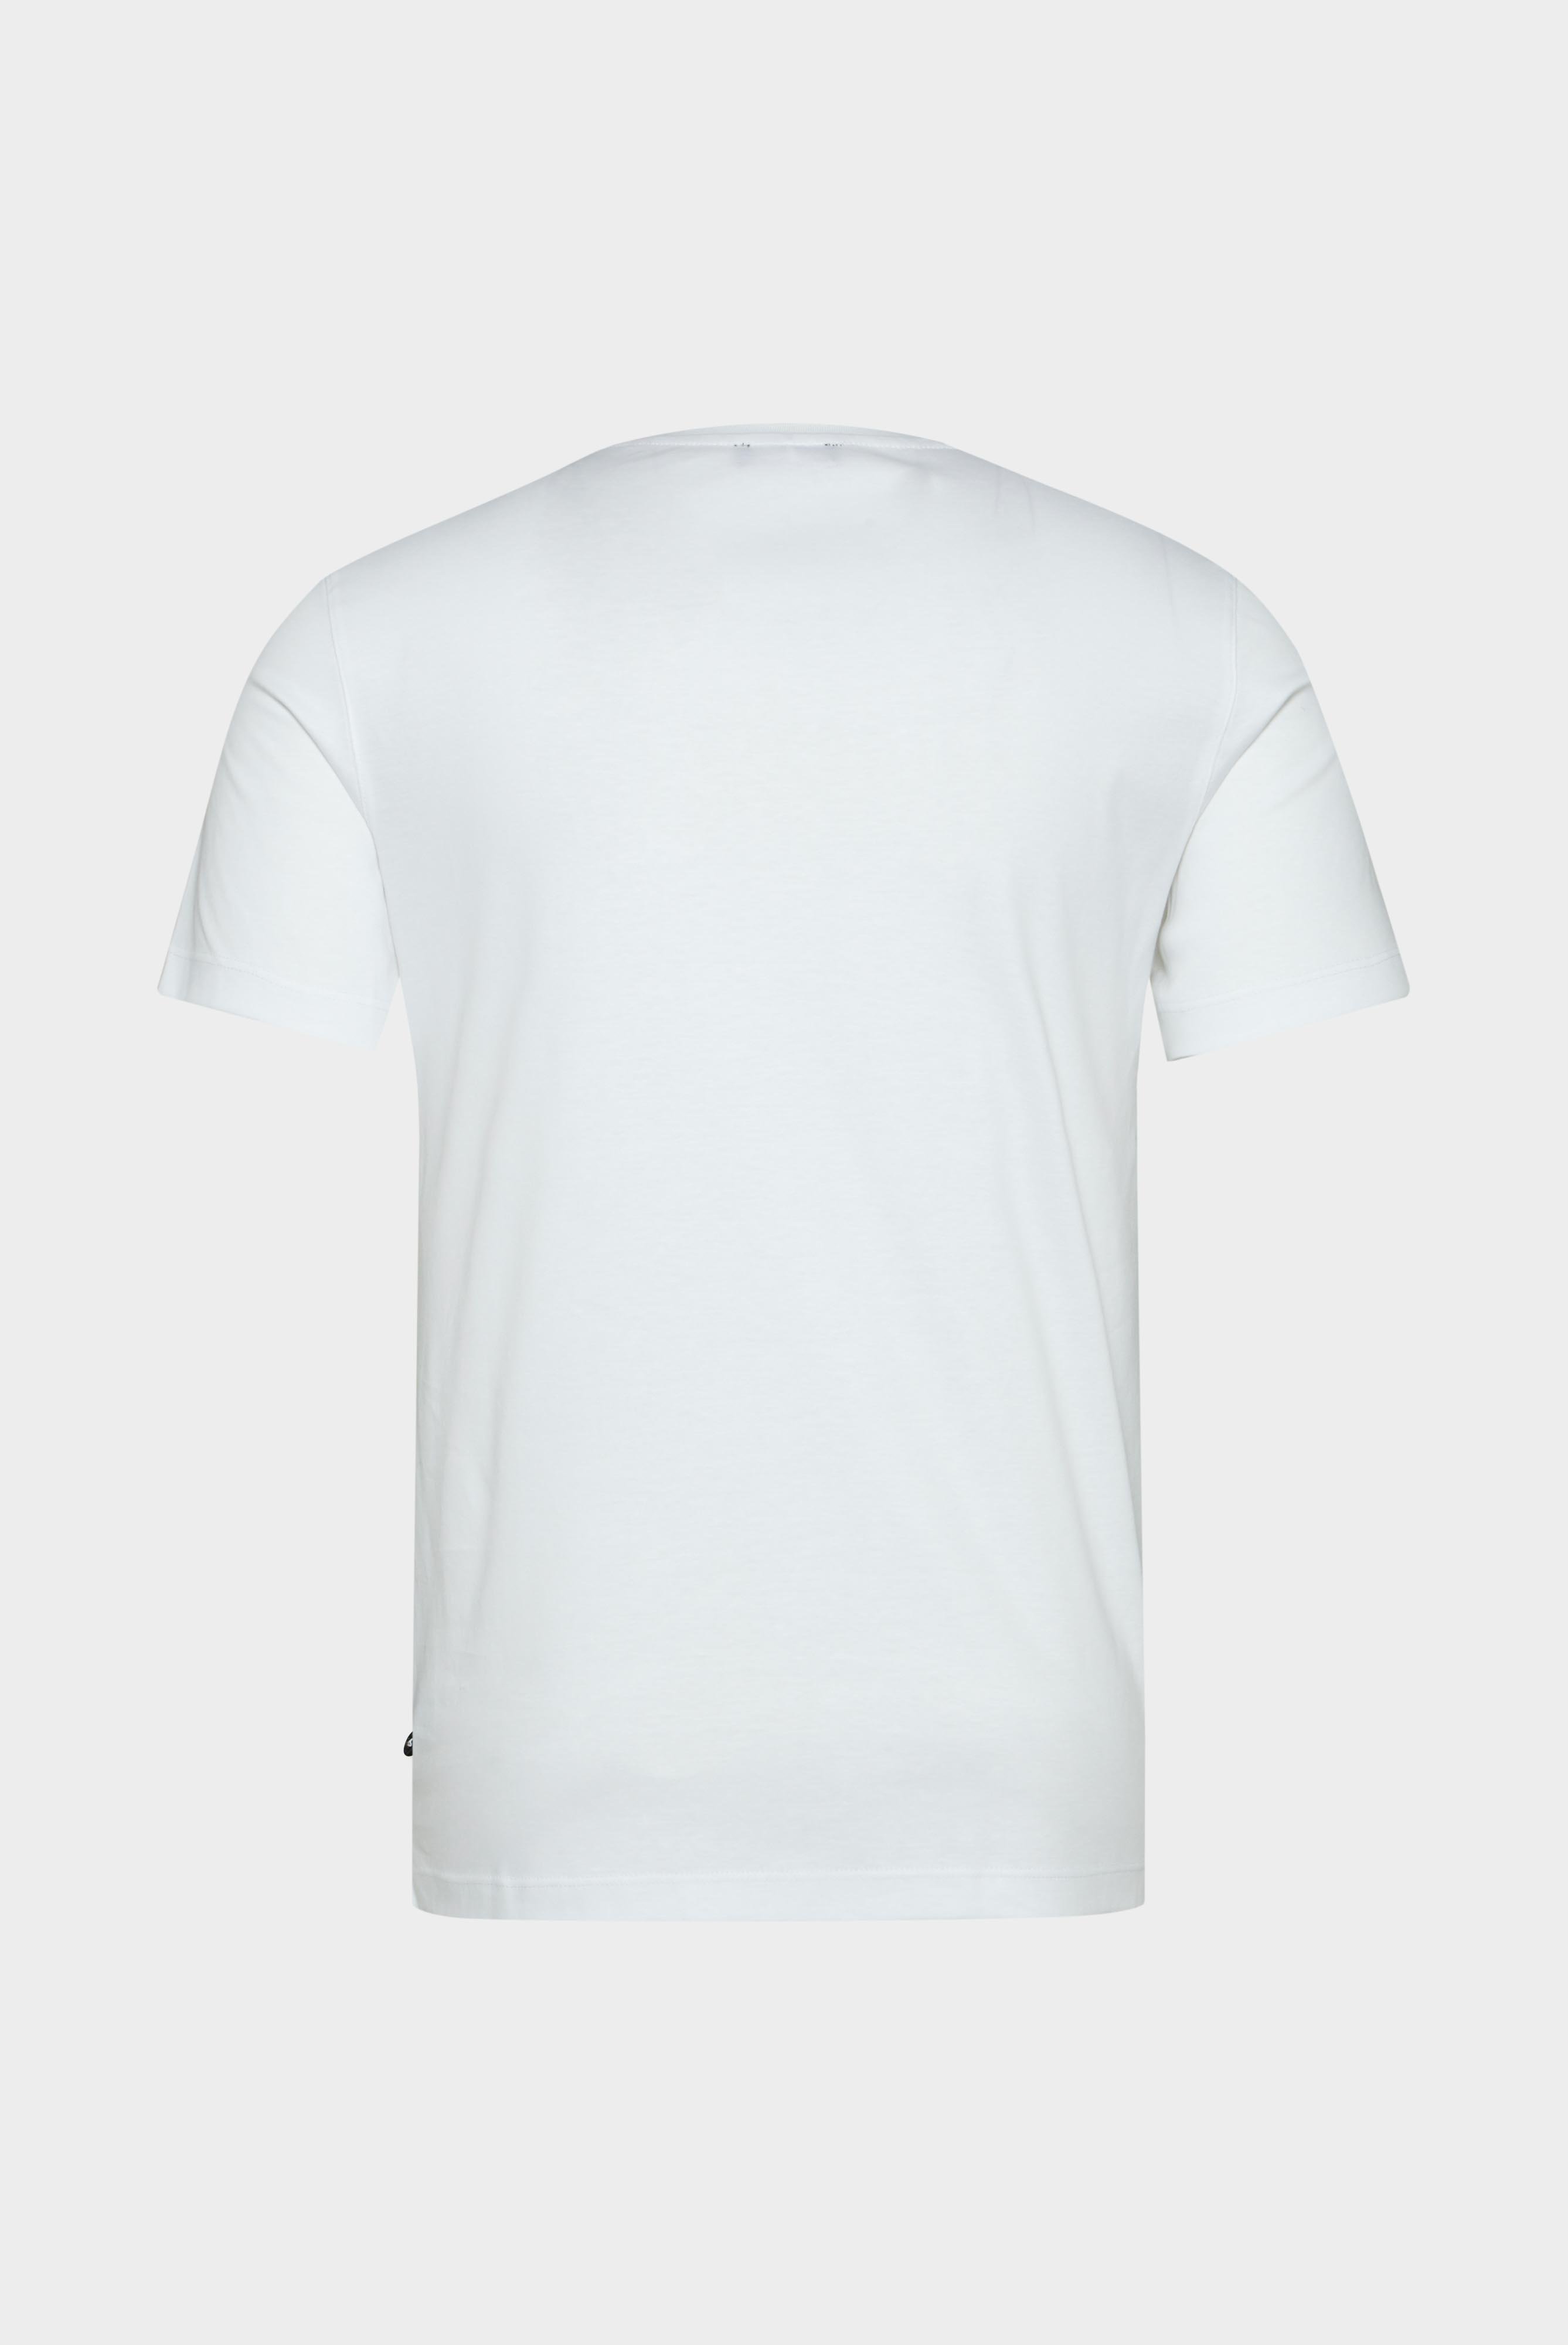 T-Shirts+Rundhals Jersey T-Shirt Slim Fit+20.1717.UX.180031.000.X4L